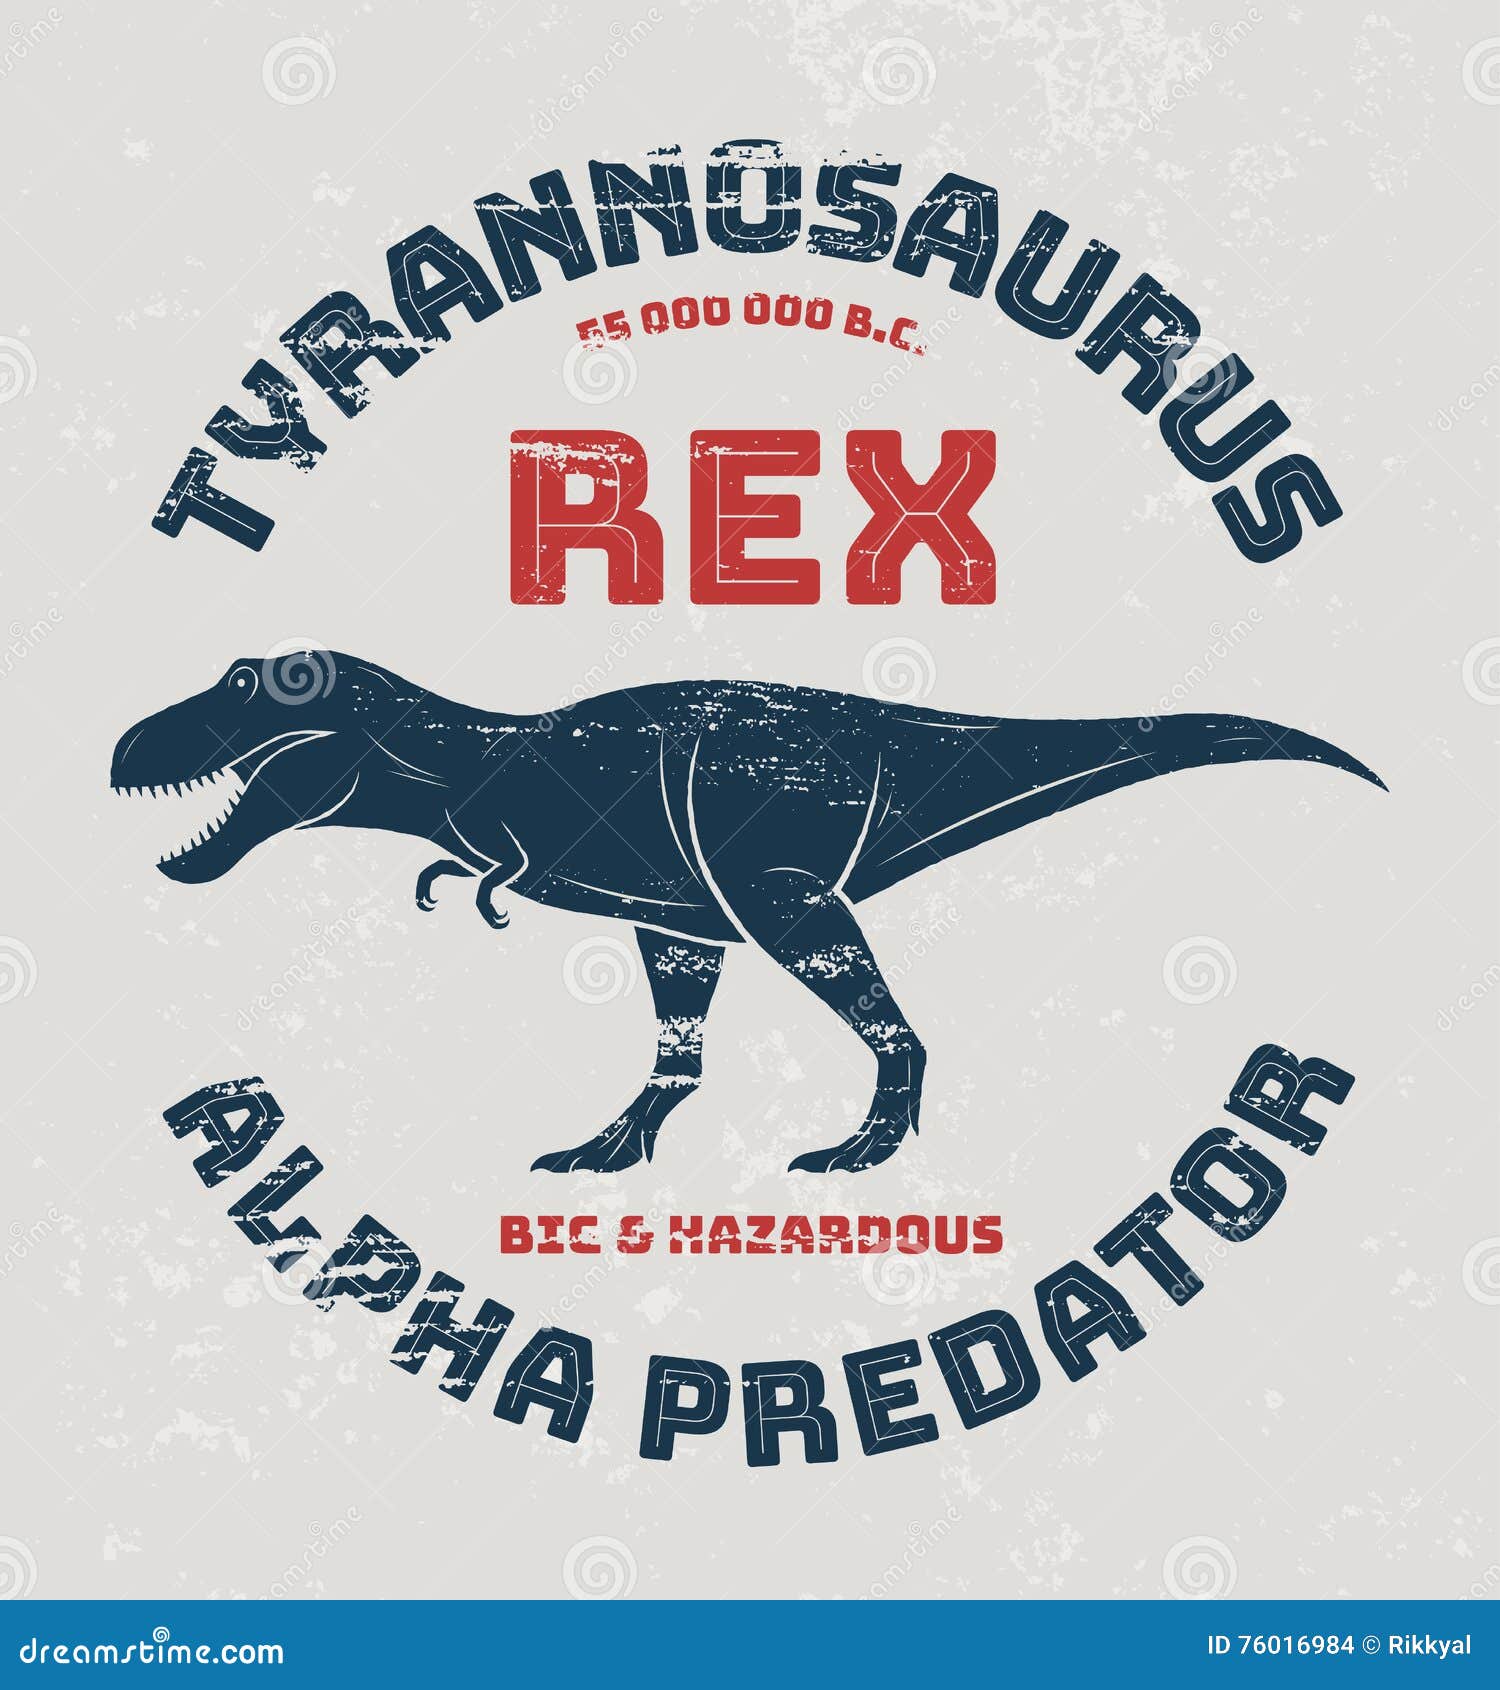 Baixar Vetor De Design De Camiseta De Desenho Animado Do Personagem T-rex